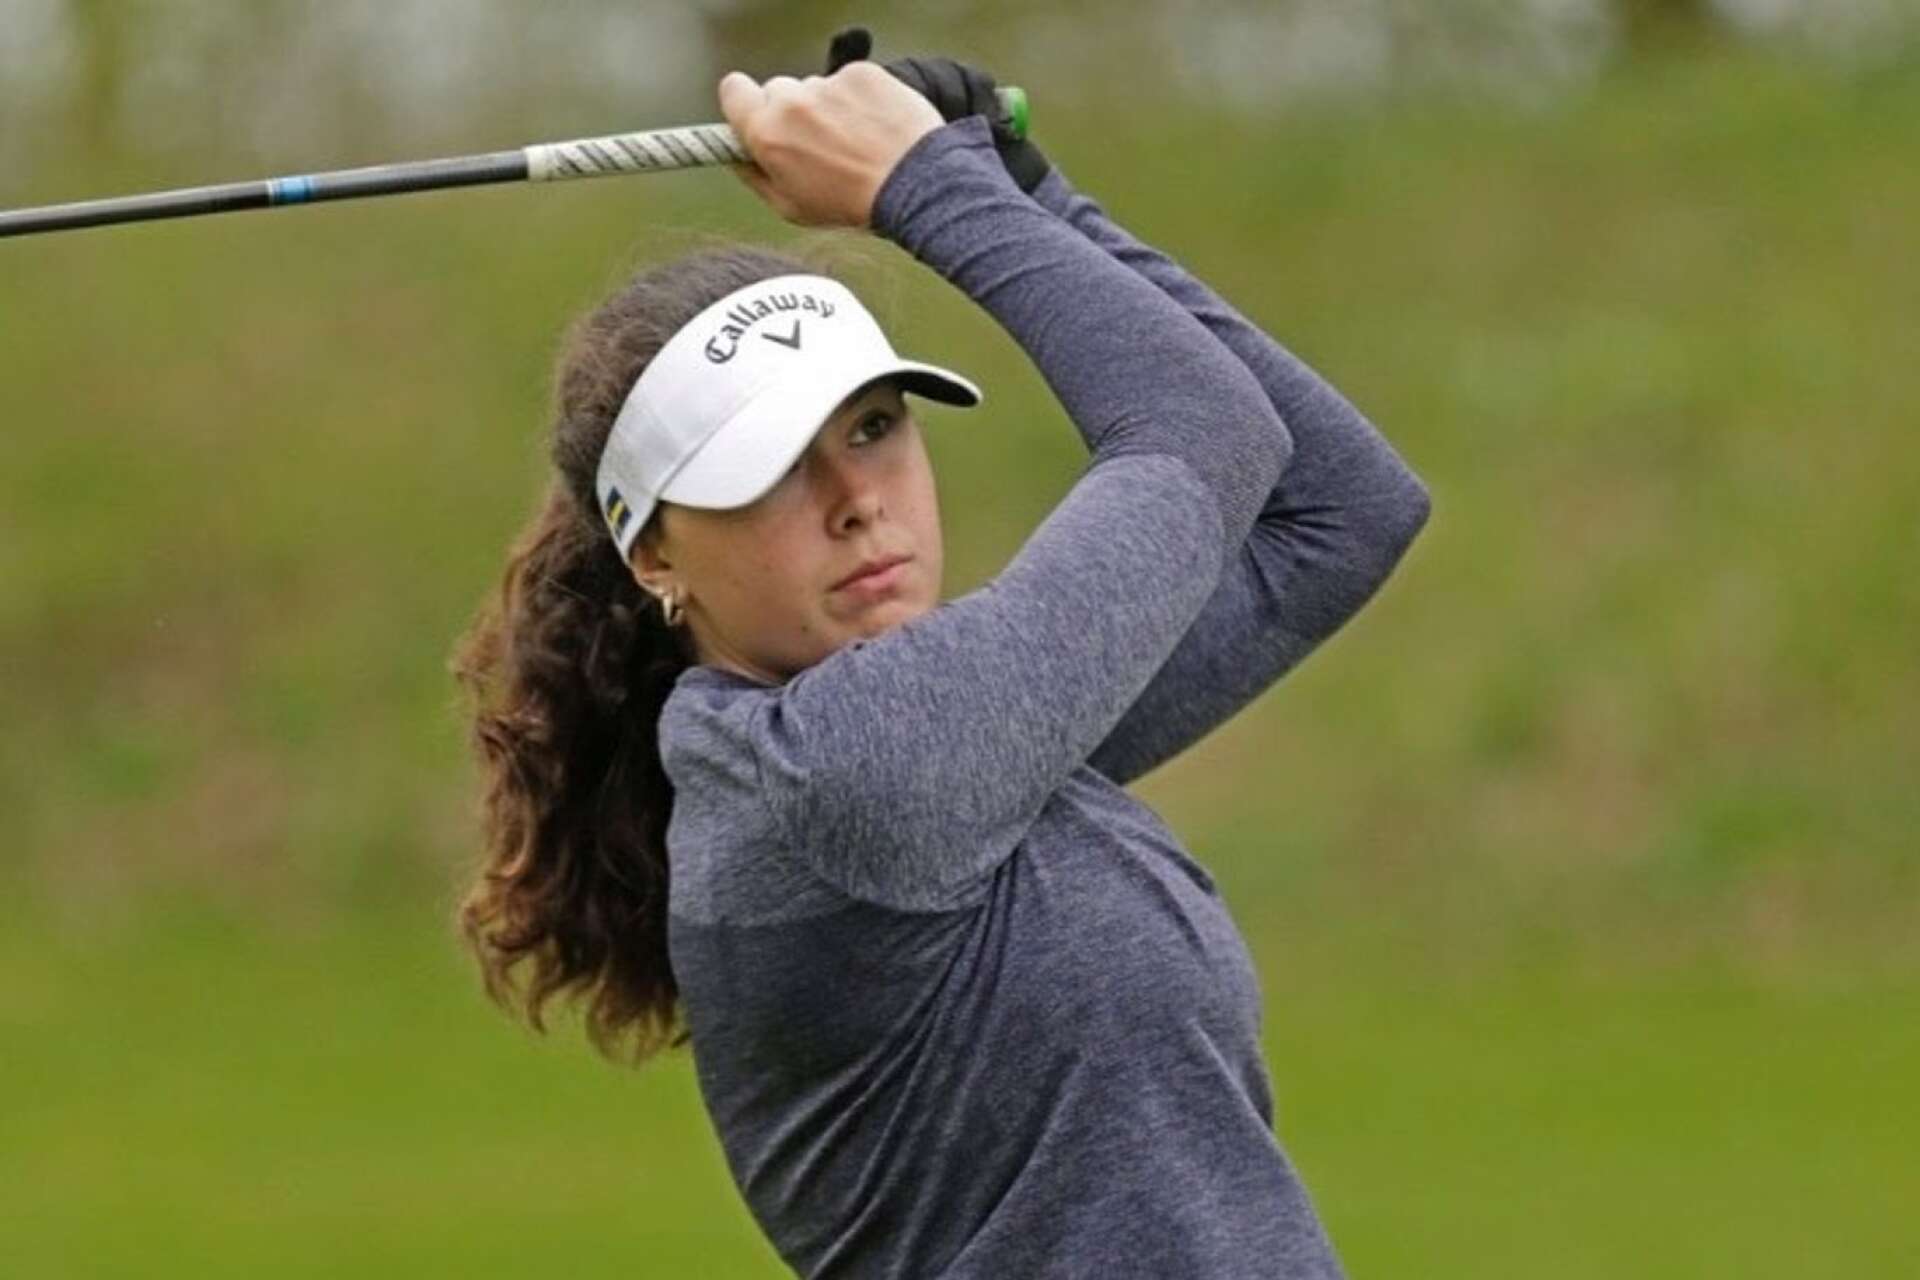 Alicia Olsson flyttar hem till Åmål över sommaren innan hon i höst börjar på college med fokus på golf i North Carolina, USA.